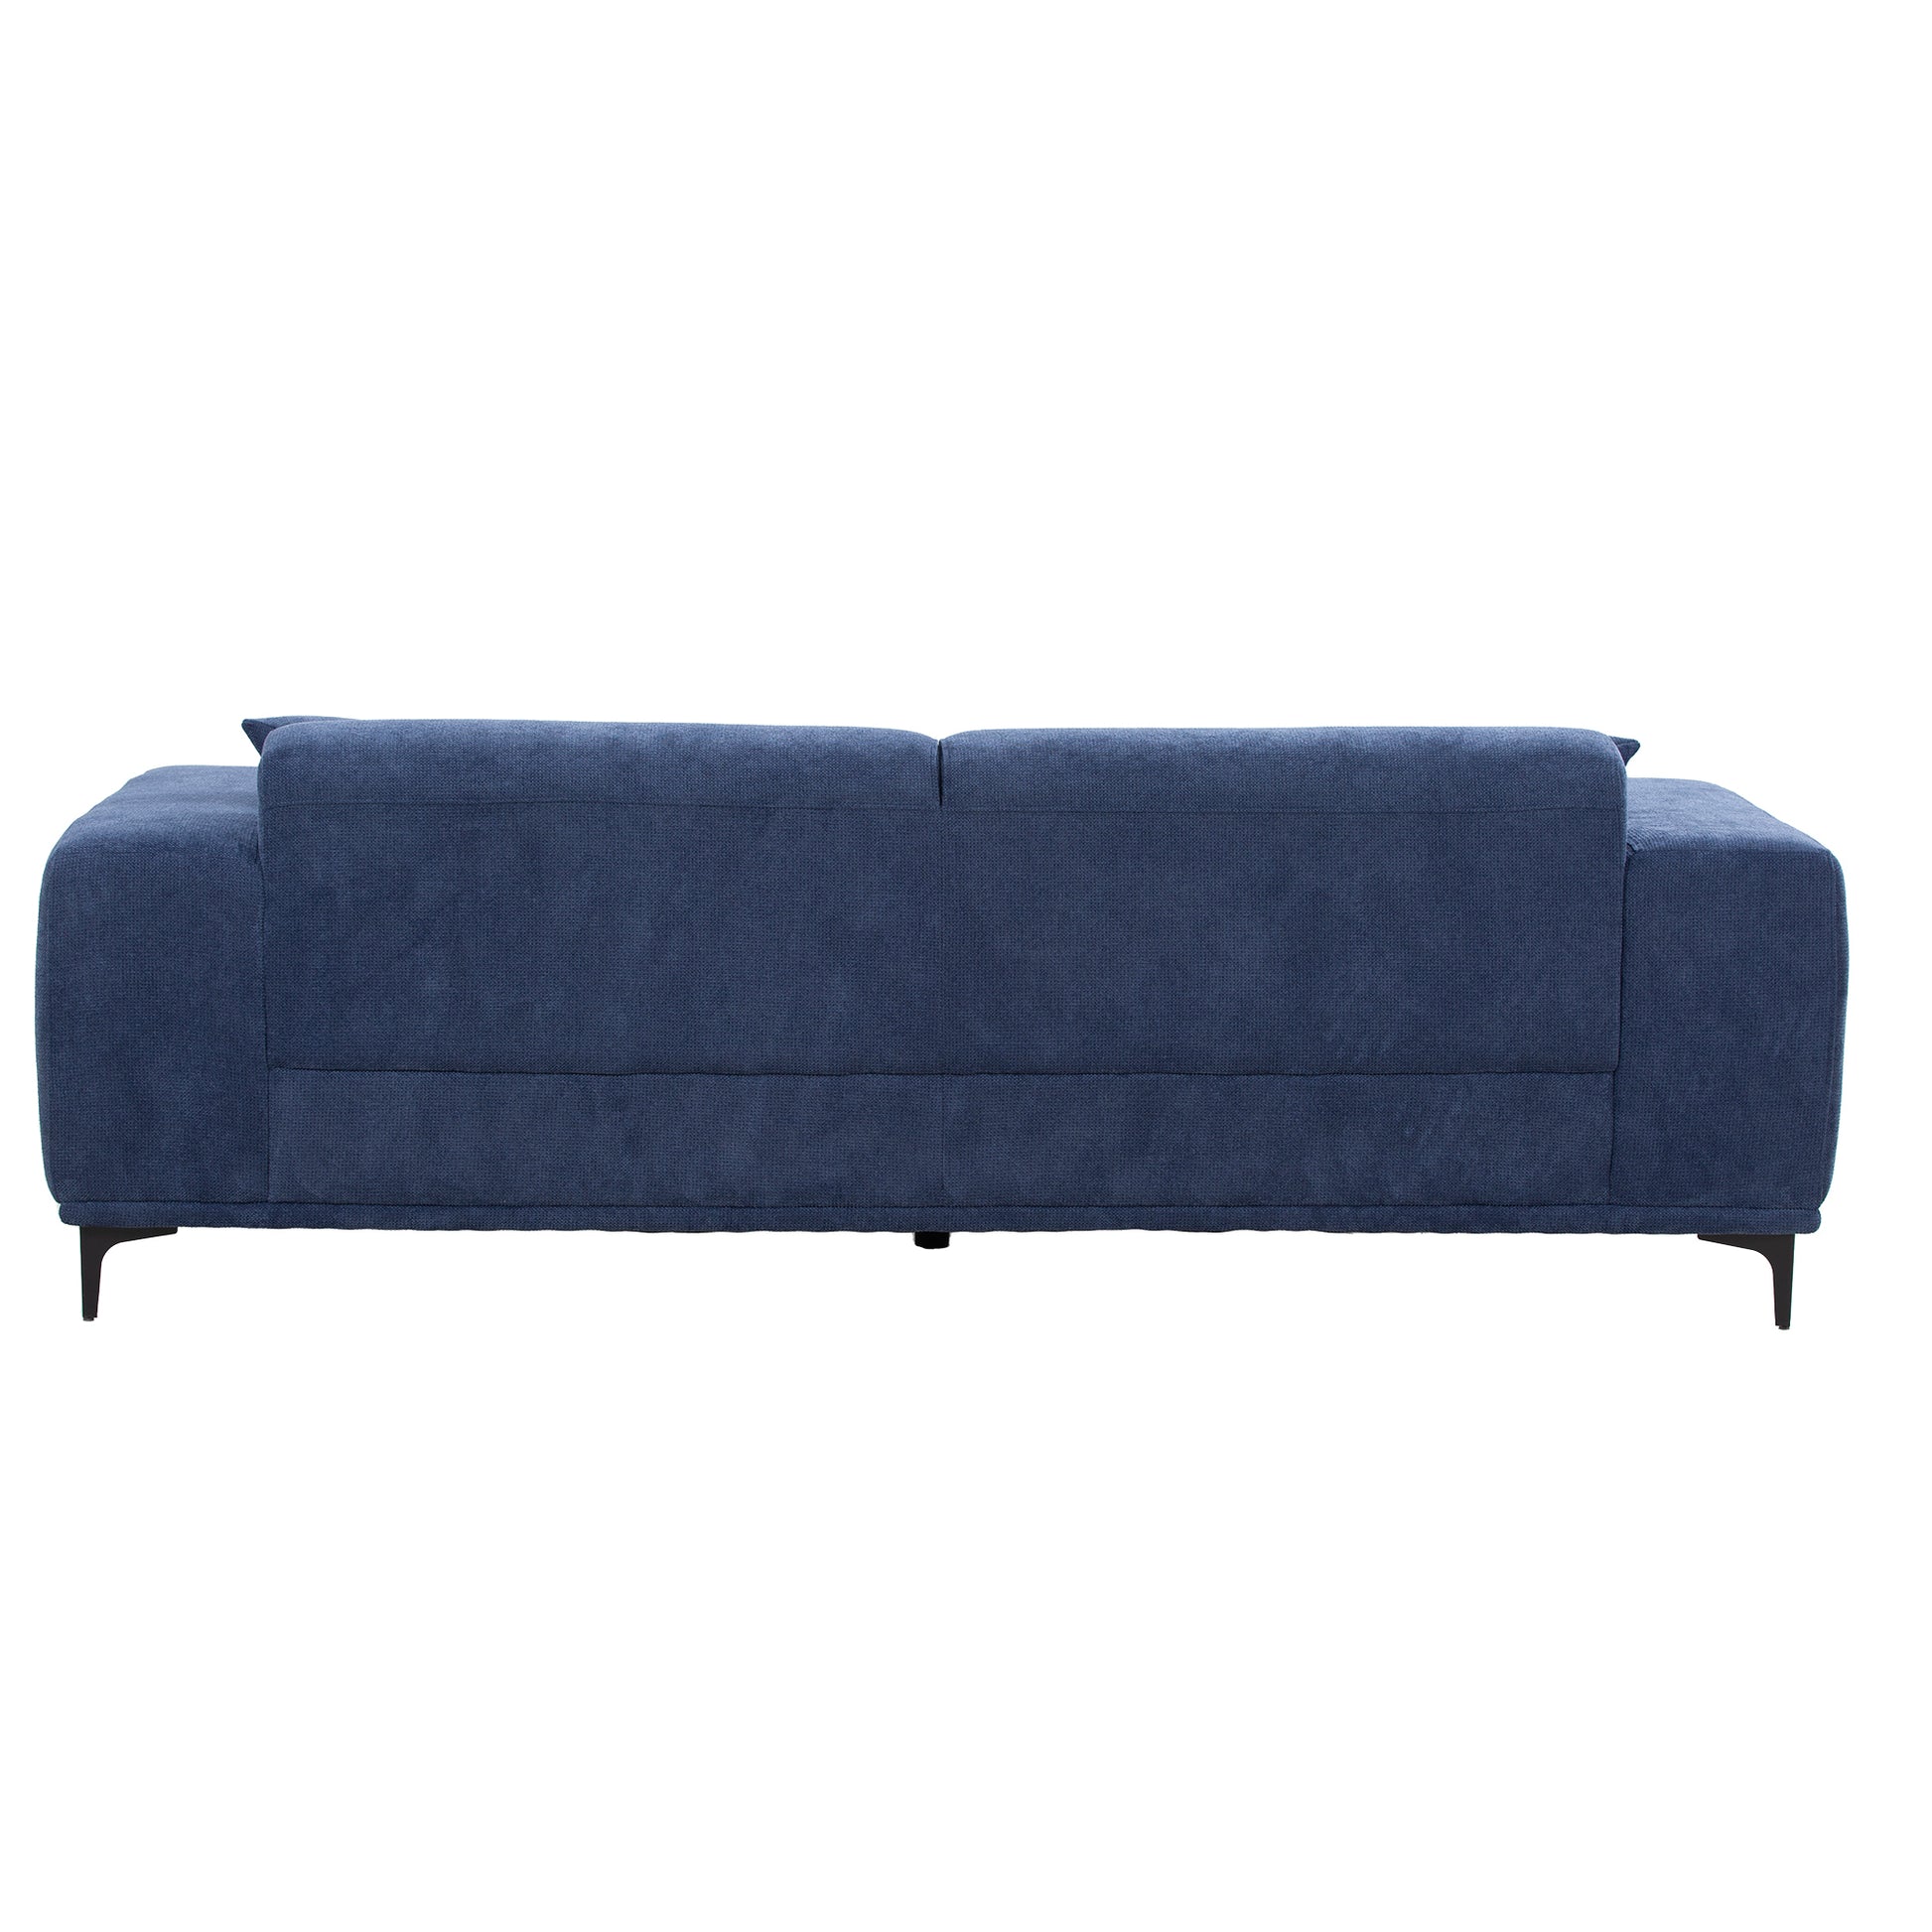 Mid-Century Modern Upholstered Sofa in Blue Linen